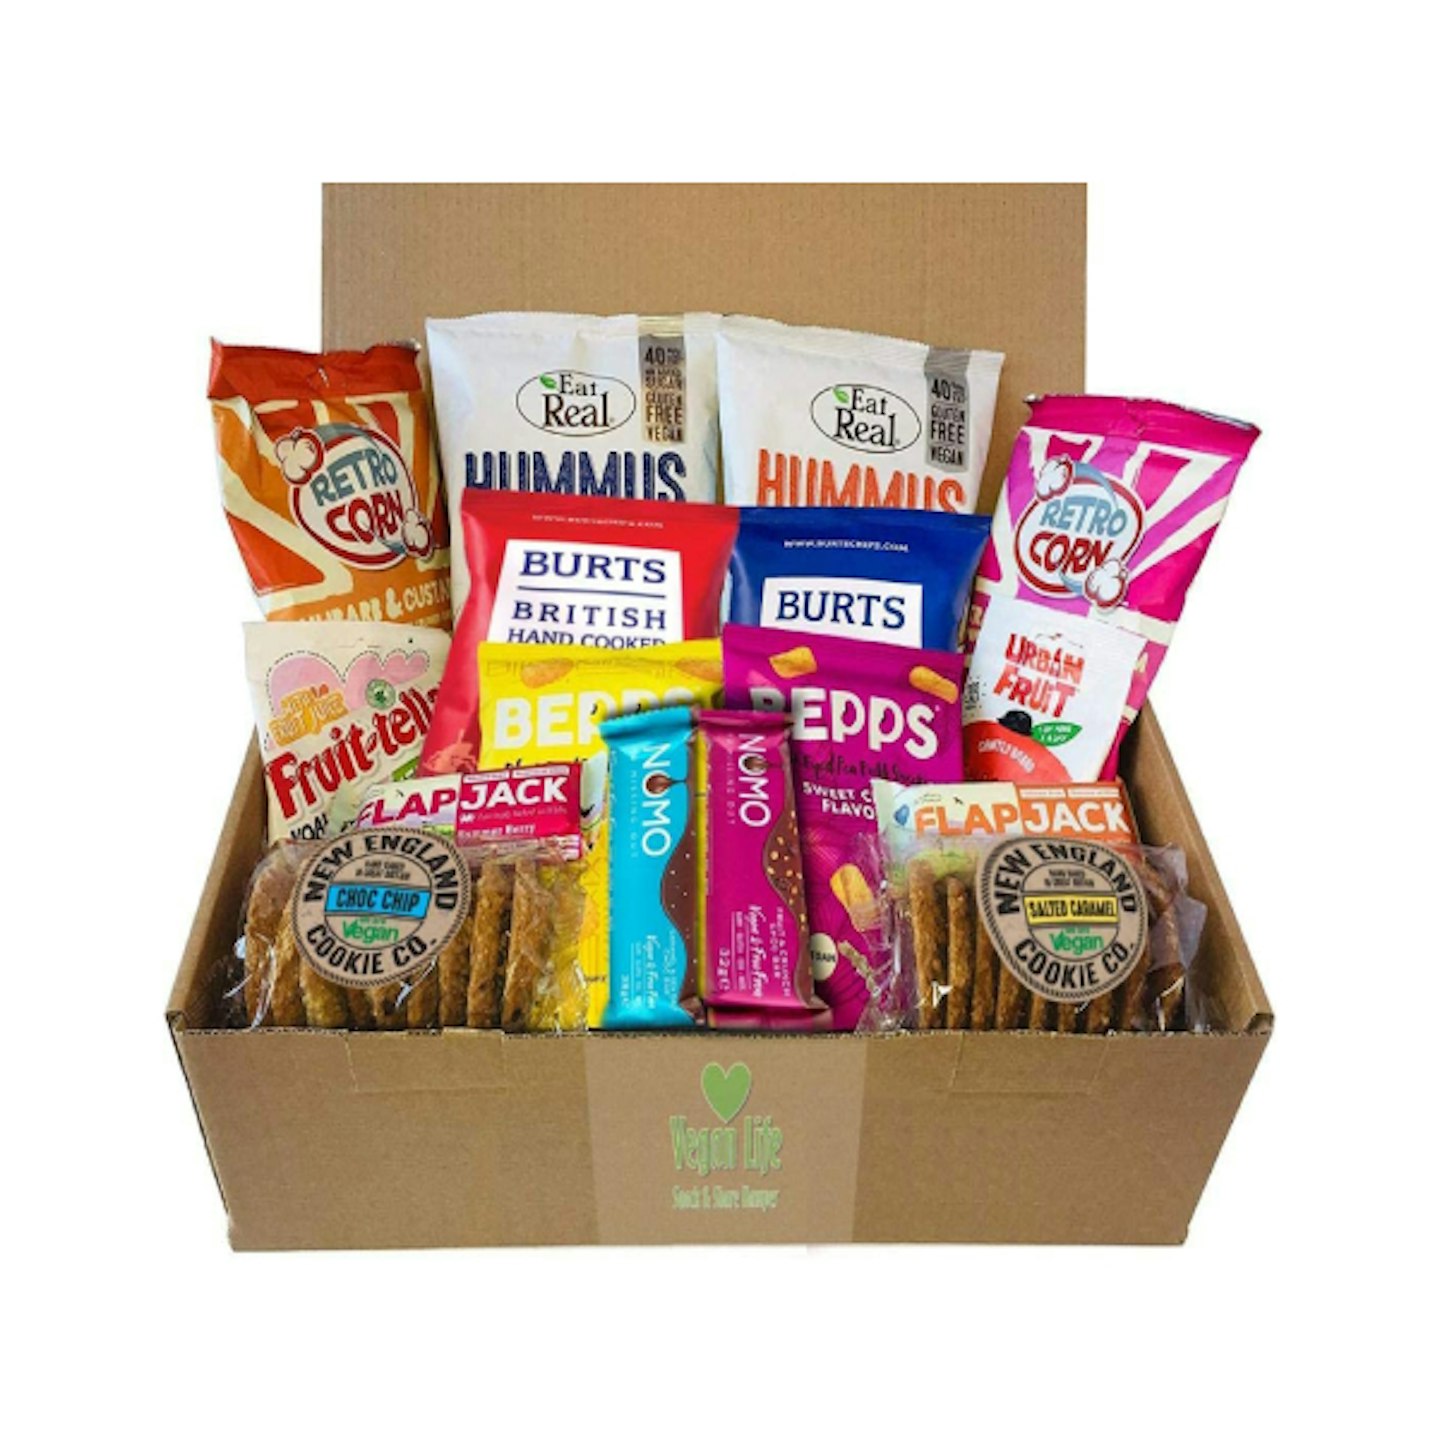 Amazon care box with vegan snacks